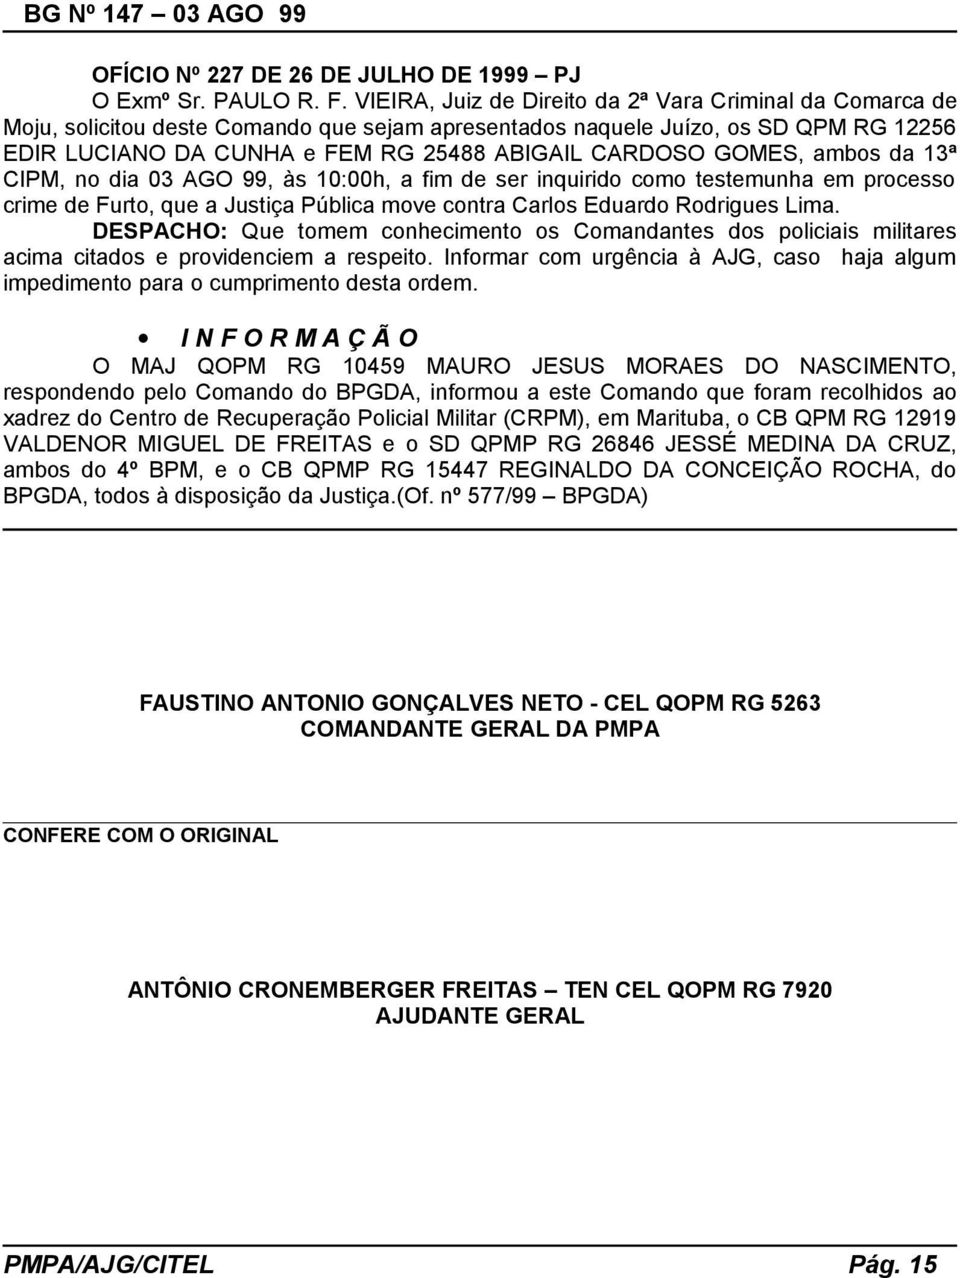 GOMES, ambos da 13ª CIPM, no dia 03 AGO 99, às 10:00h, a fim de ser inquirido como testemunha em processo crime de Furto, que a Justiça Pública move contra Carlos Eduardo Rodrigues Lima.